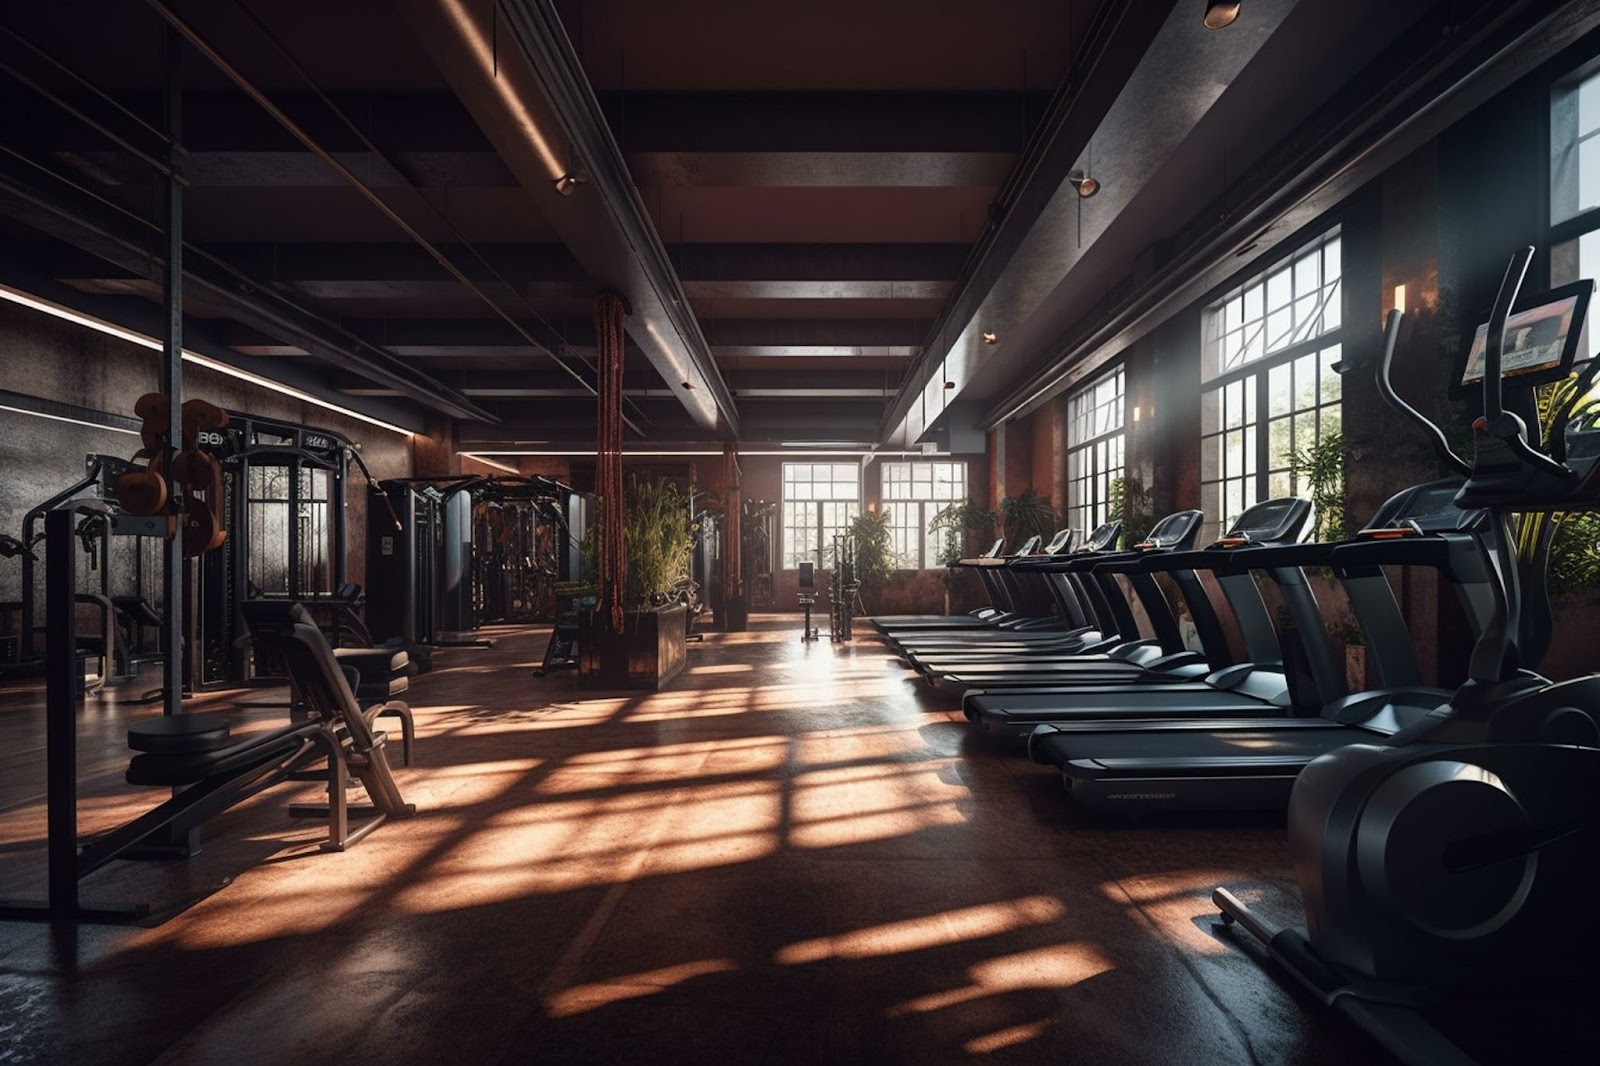 Expensive, empty fitness studio